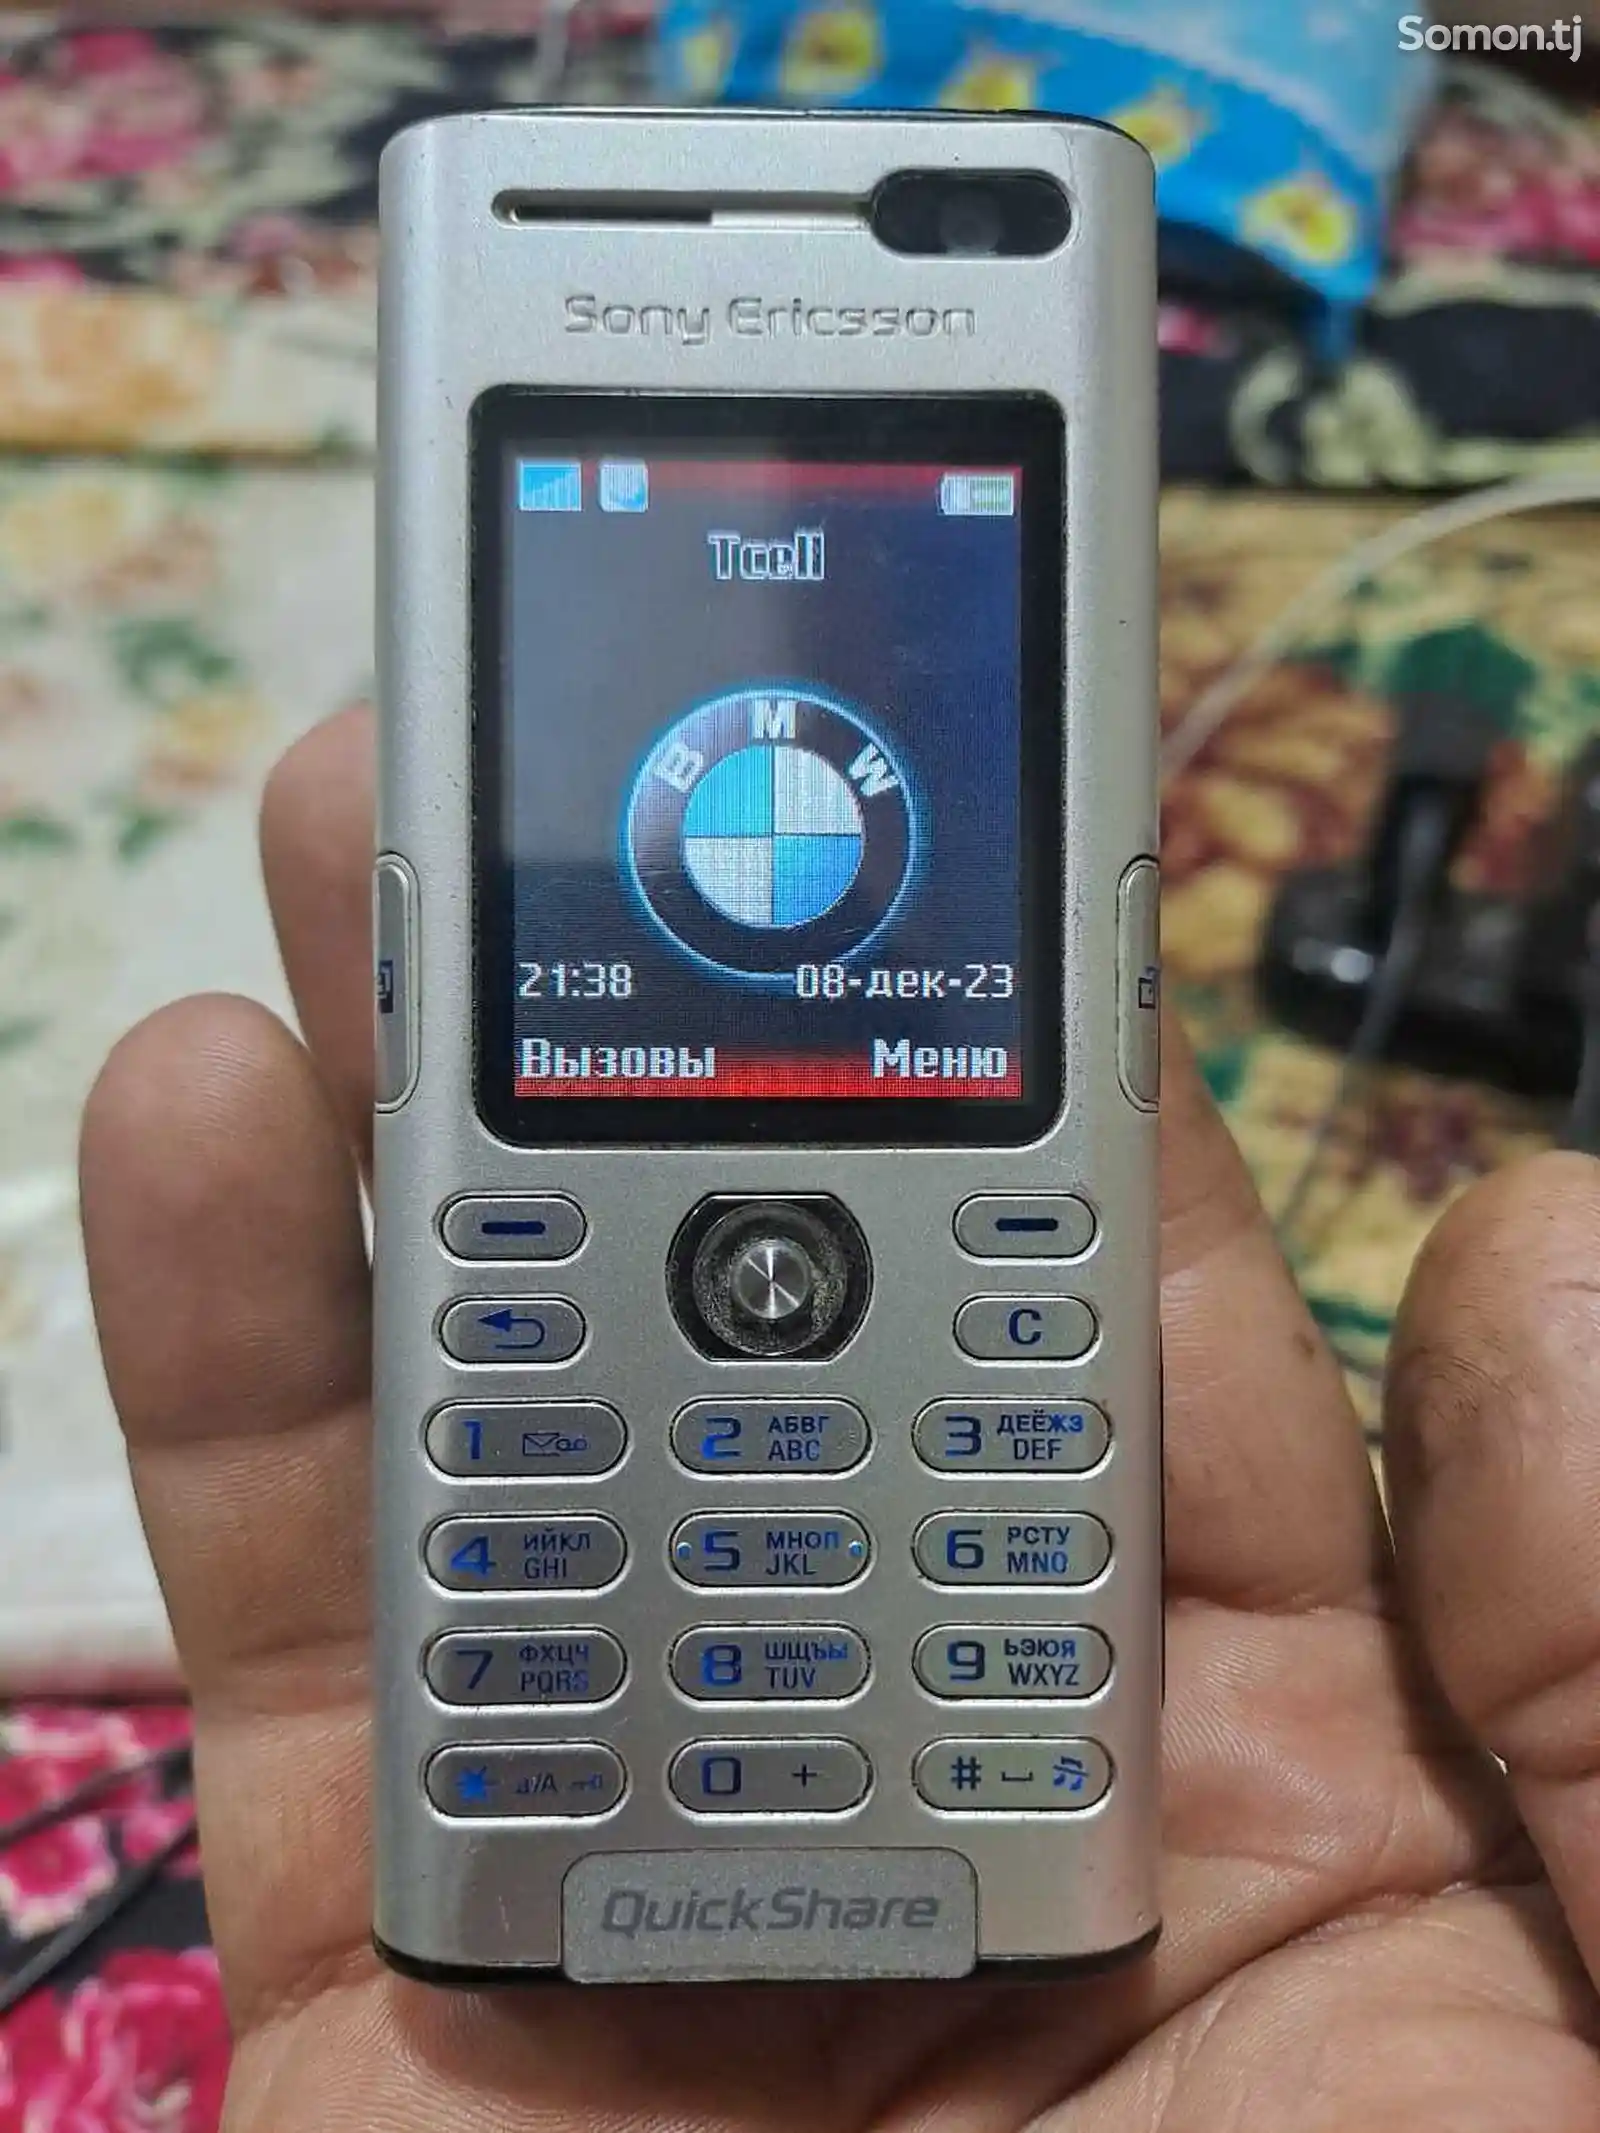 Sony Ericsson-2